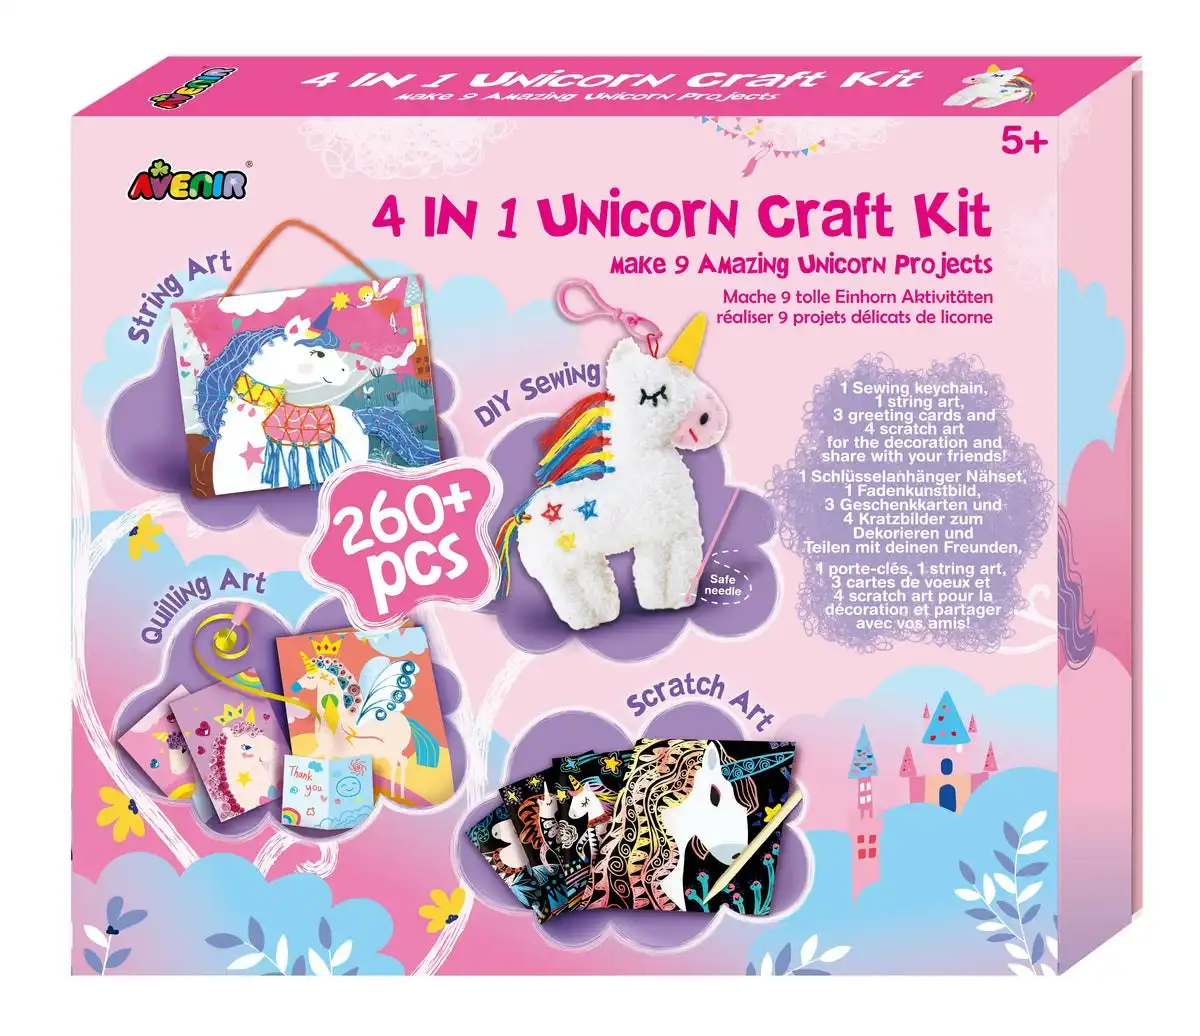 Avenir 4 In 1 Unicorn Craft Kit